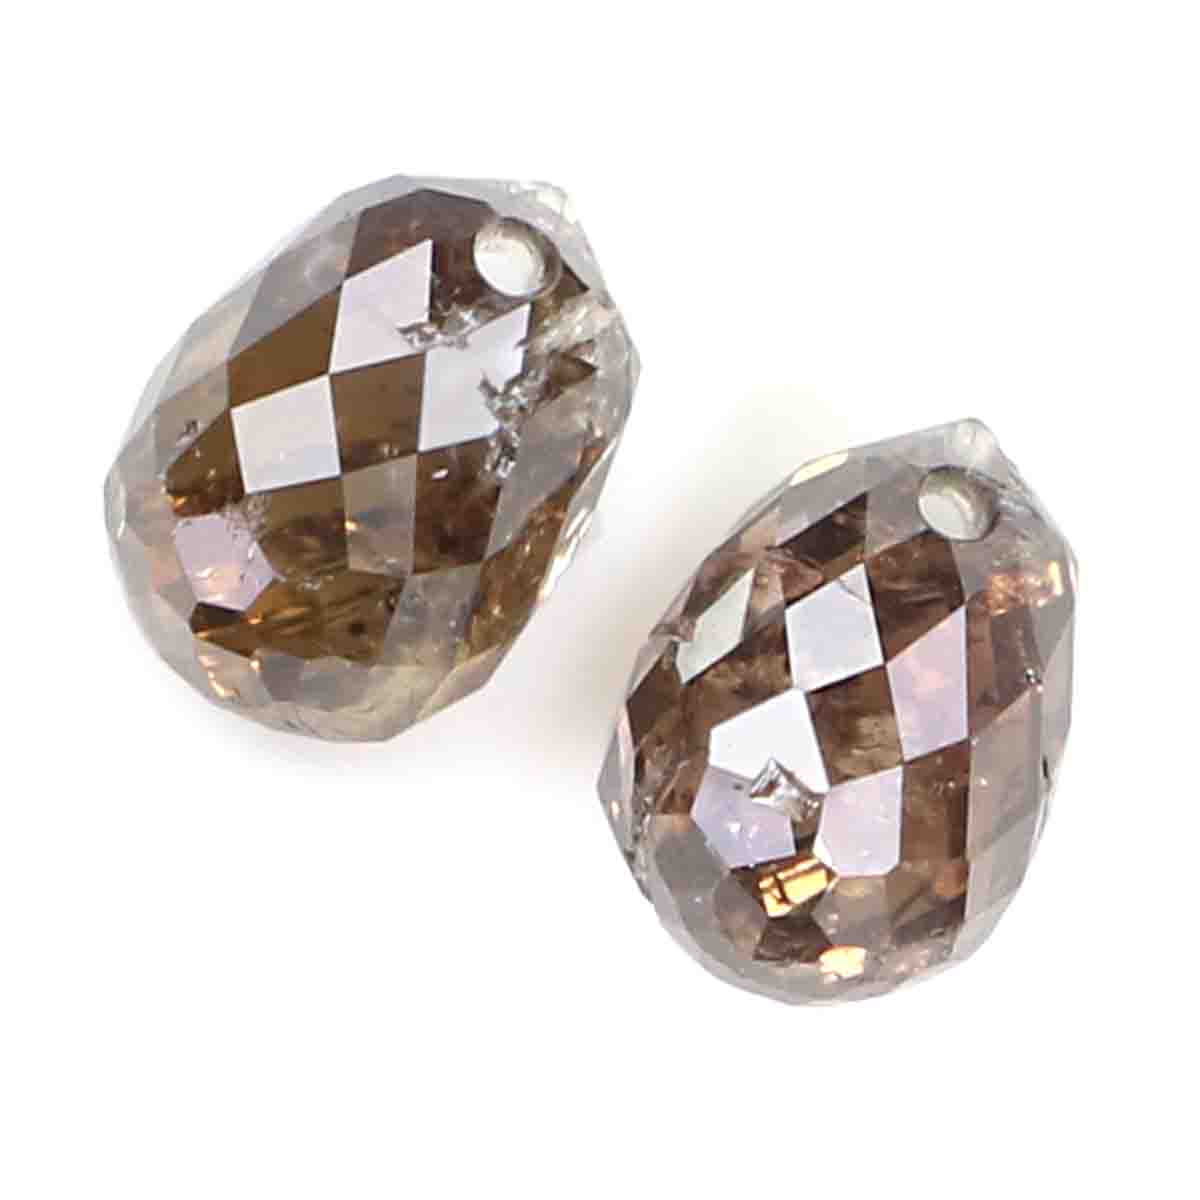 1.07 Ct Natural Loose Briolette Shape Diamond Brown Color Drop Diamond 4.90 MM Natural Loose Diamond Brown Briolette Cut Diamond LQ9993